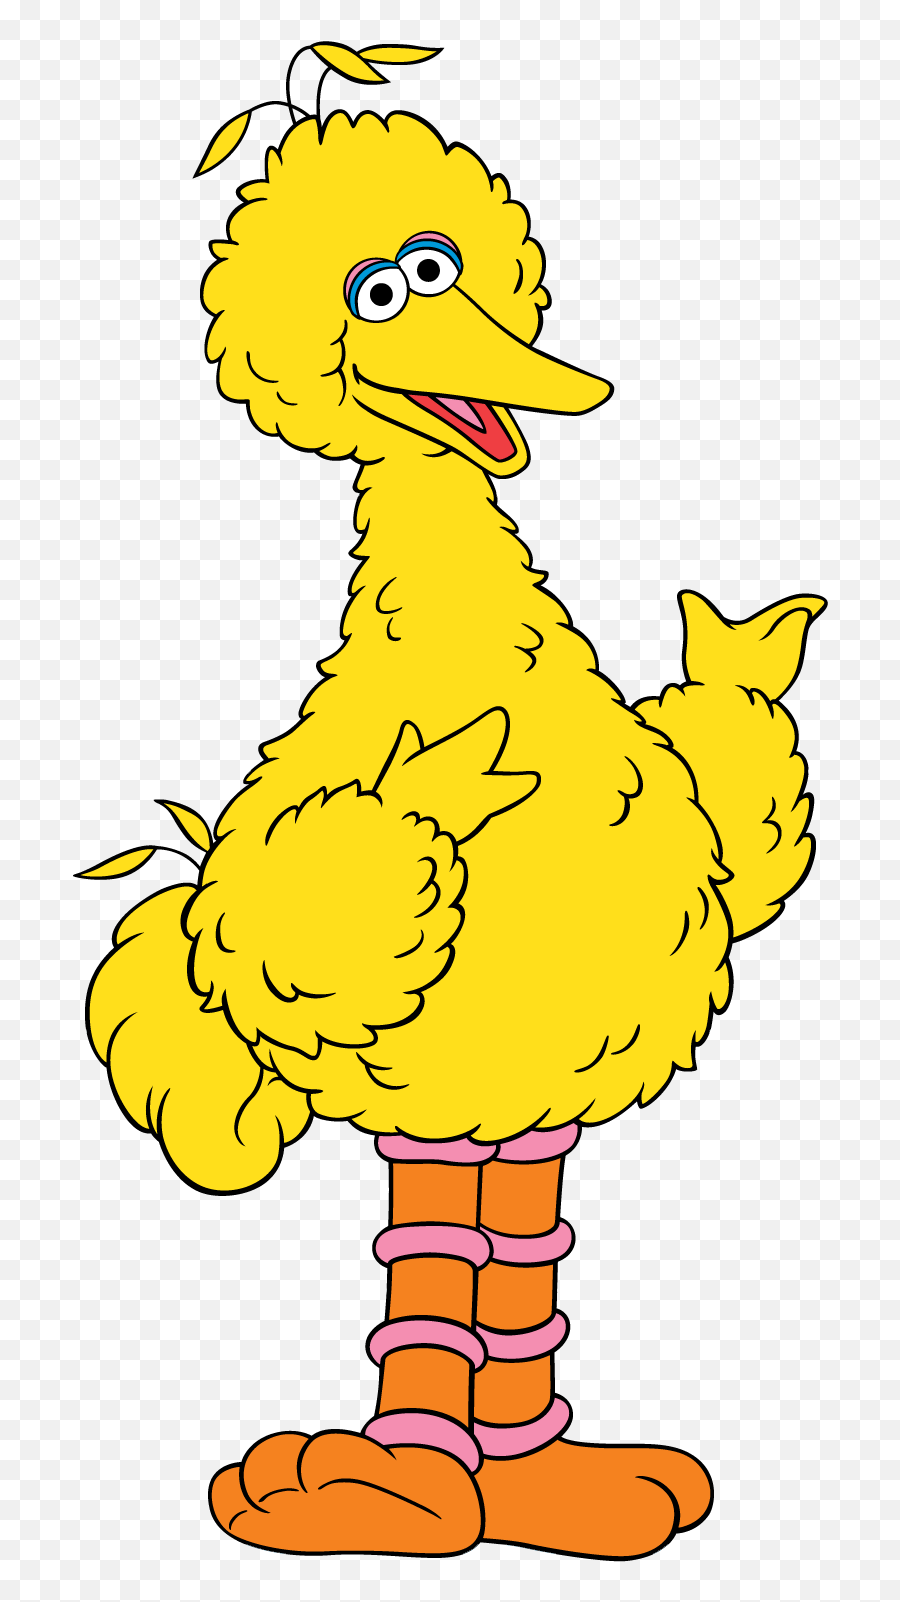 Big Bird Sesame Street - Big Bird Sesame Street Clipart Emoji,Street Clipart